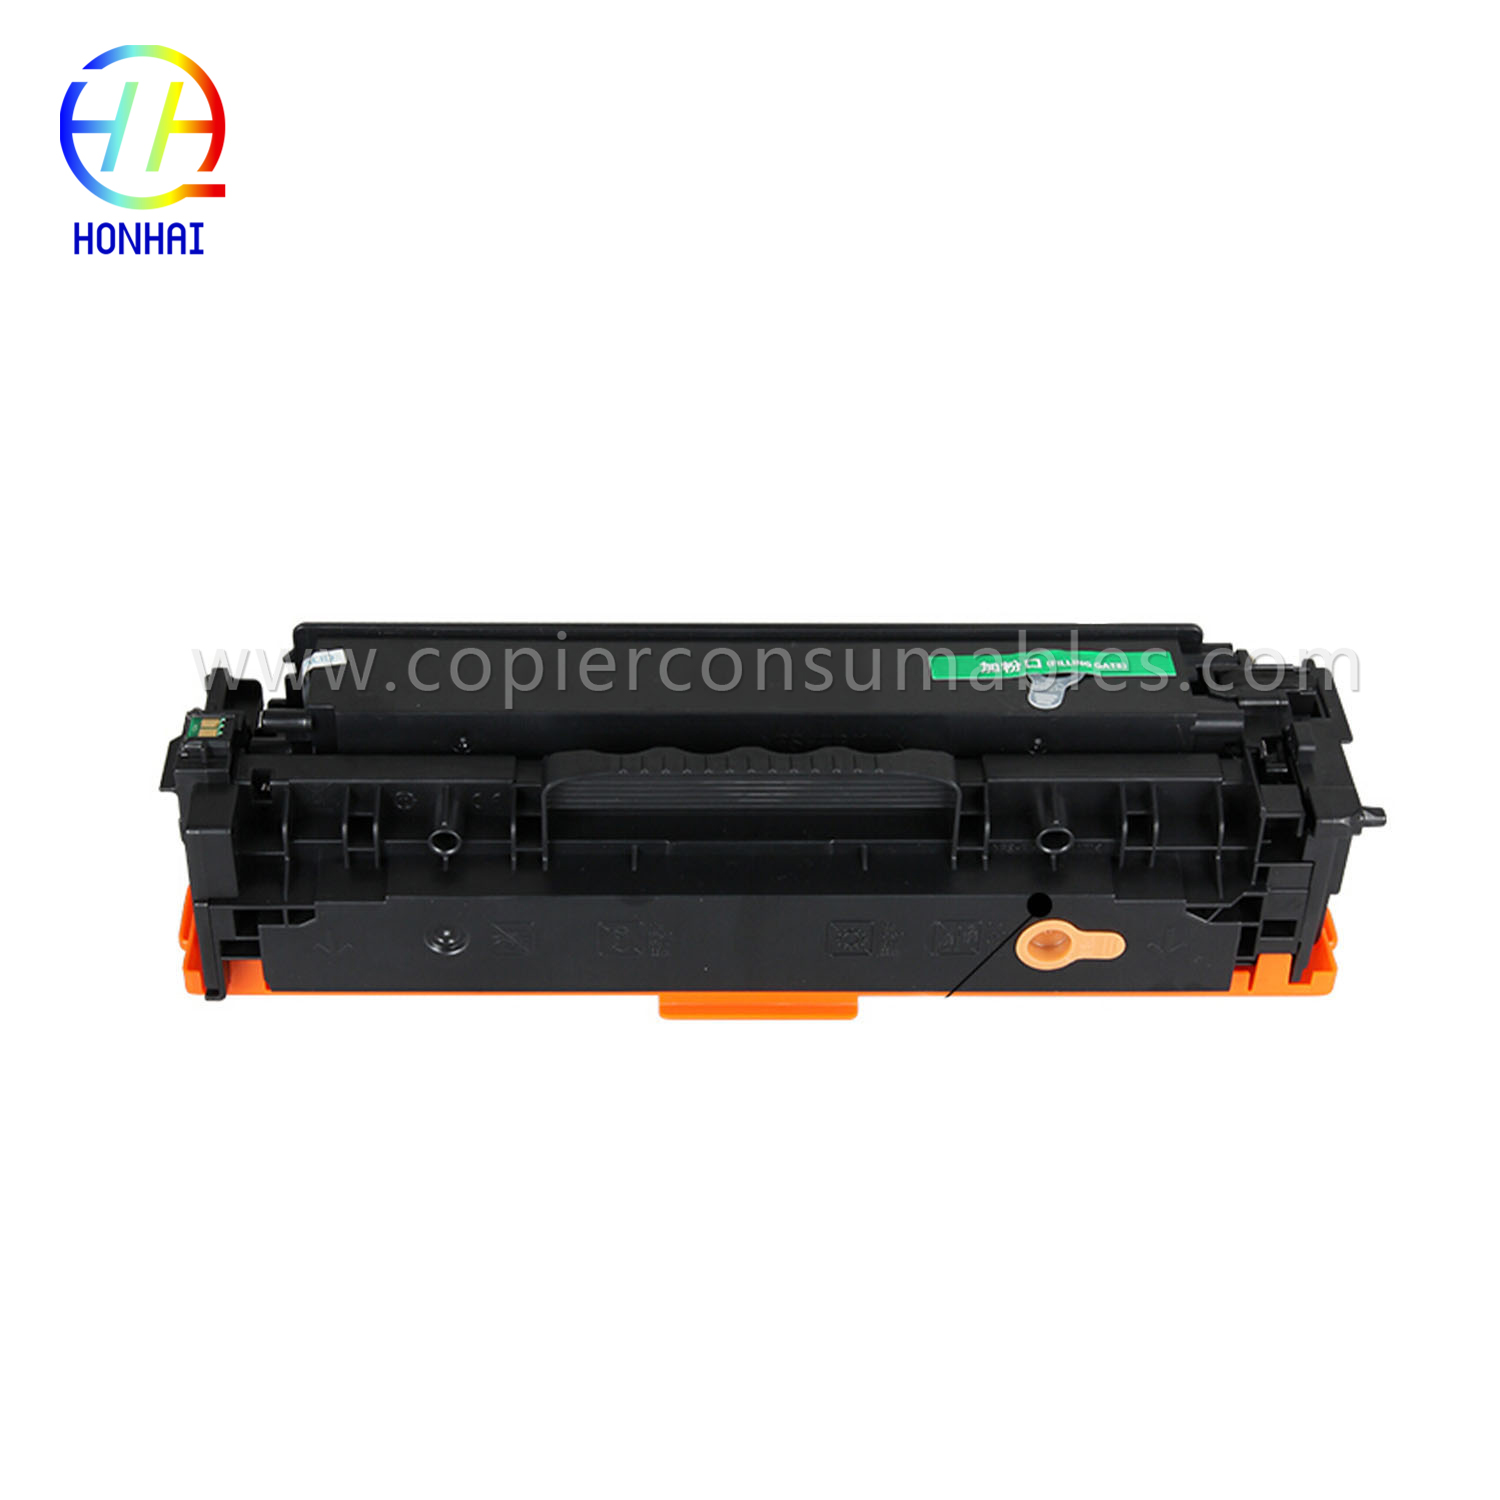 Cartuccia toner per HP Laserjet PRO 400 Color Mfp M451nw M451DN M451dw PRO 300 Color Mfp M375nw (CE410A) 拷贝